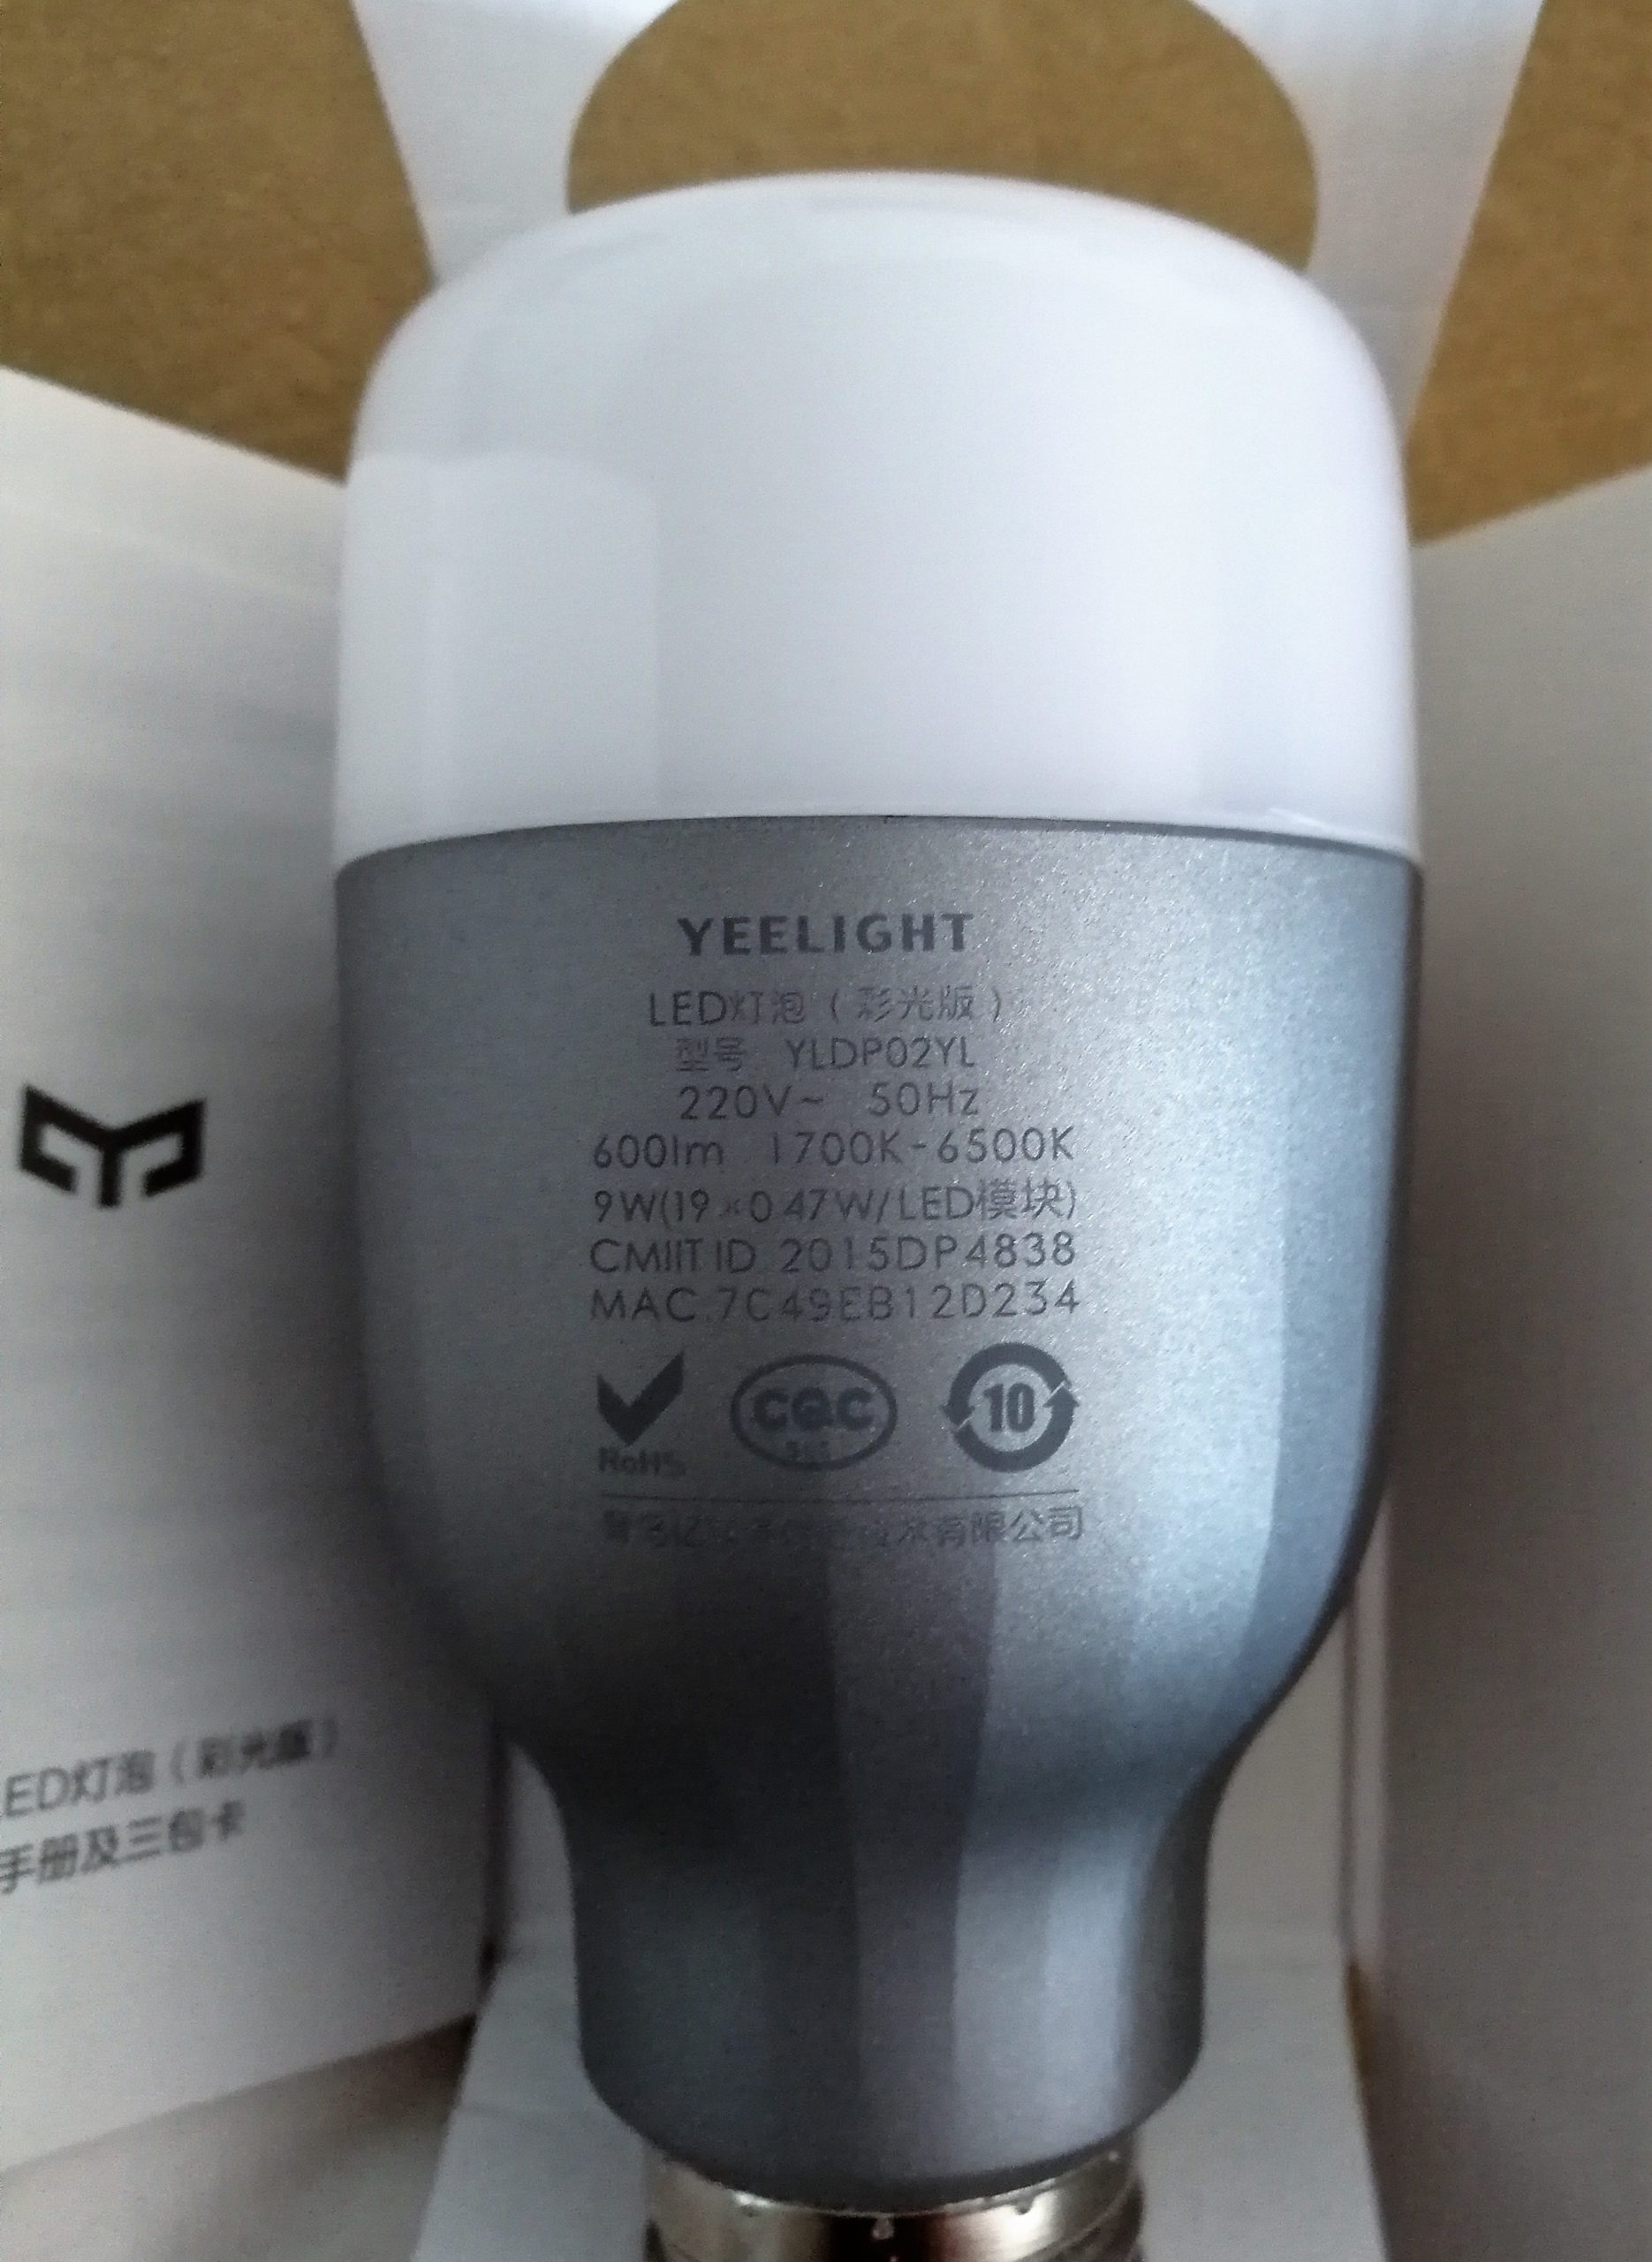 Acheter Ampoule Smart LED Bulb Xiaomi Yeelight (couleur)